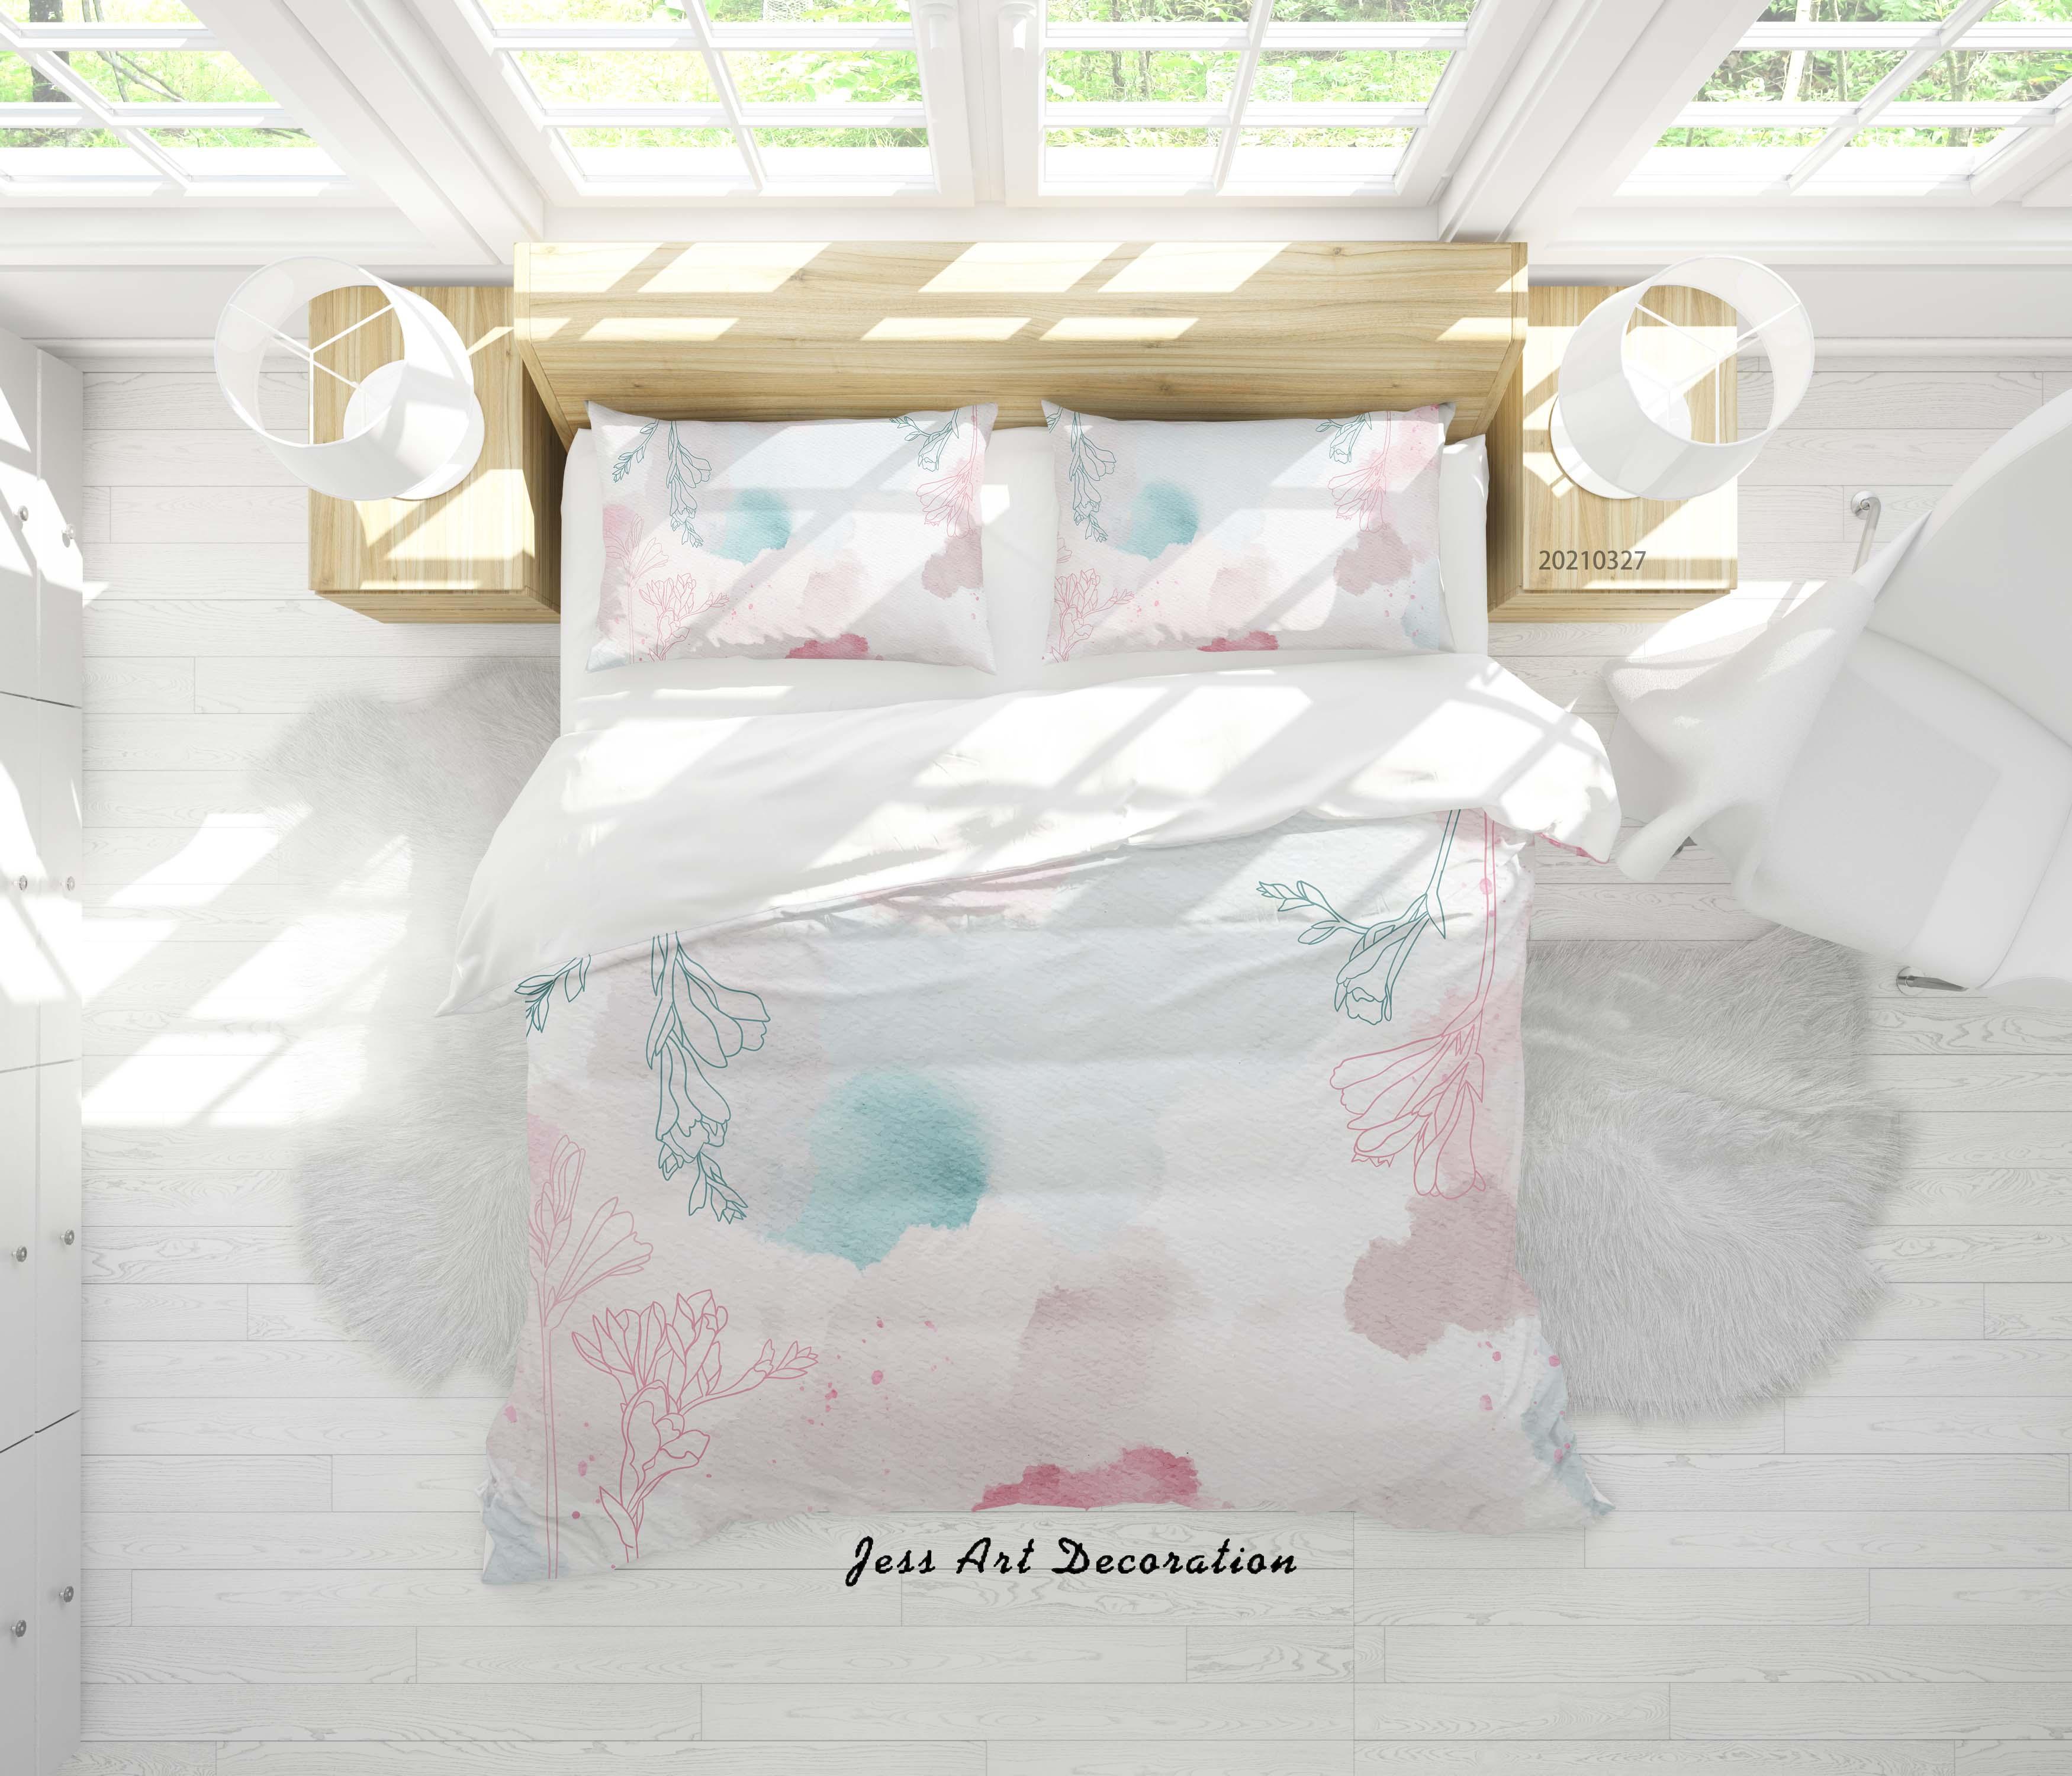 3D Watercolor Floral Pattern Quilt Cover Set Bedding Set Duvet Cover Pillowcases 308- Jess Art Decoration